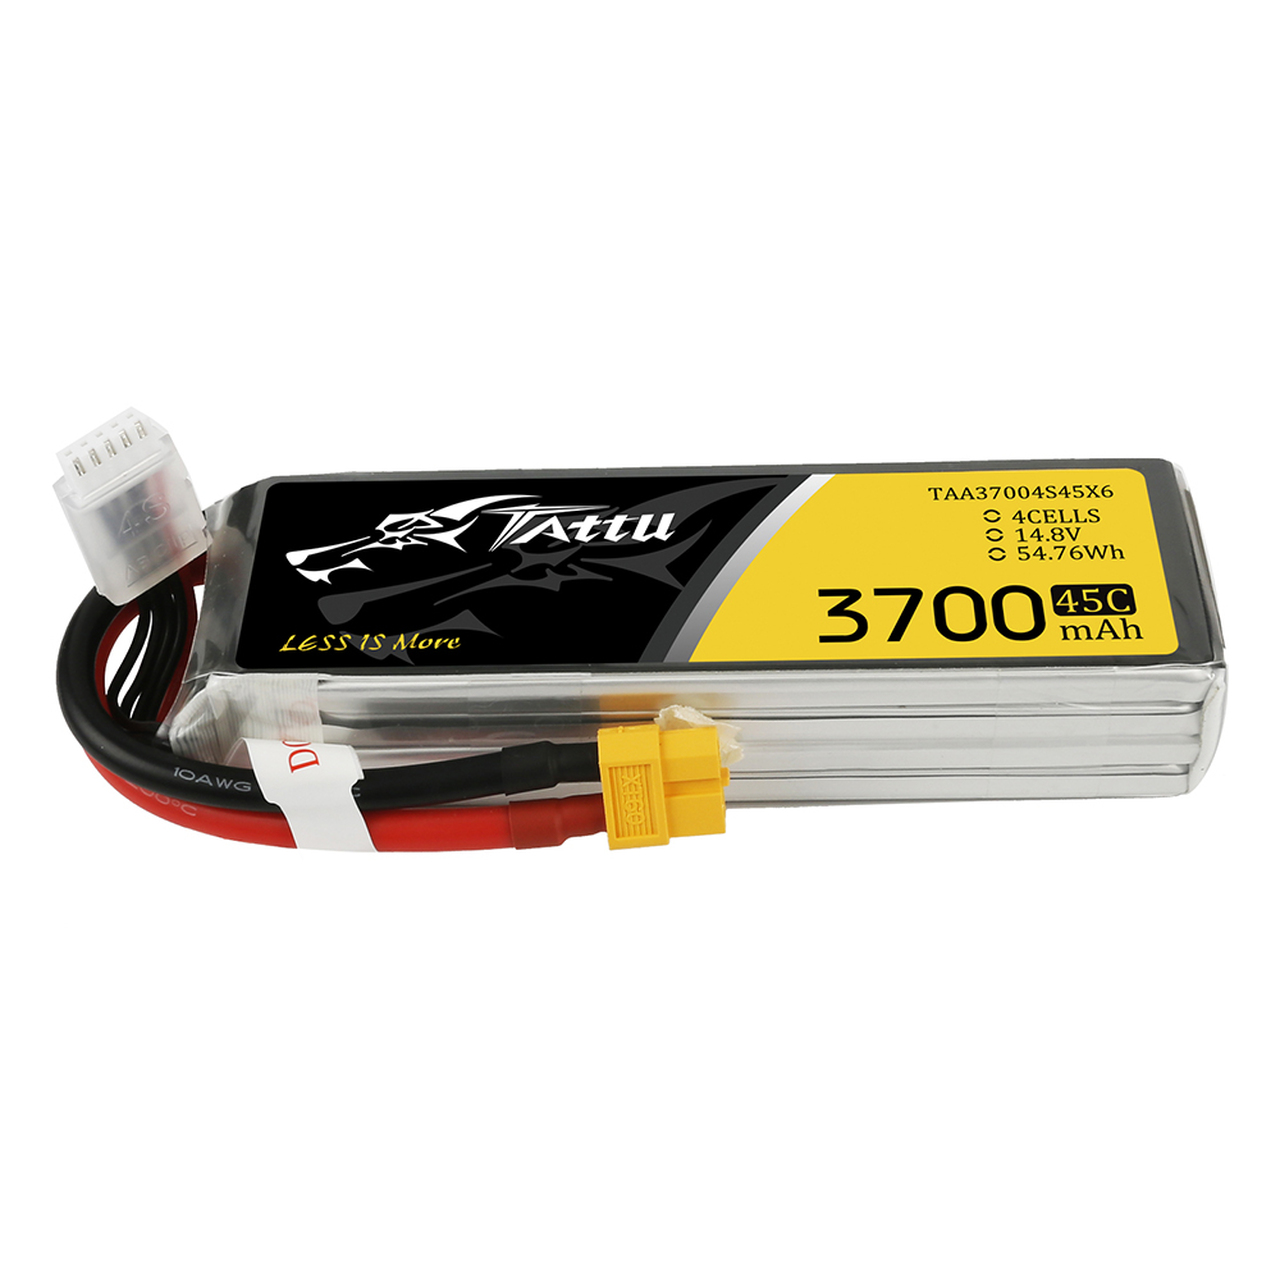 Tattu 3700mAh 45C 4S1P Lipo Battery Pack with XT60 Plug